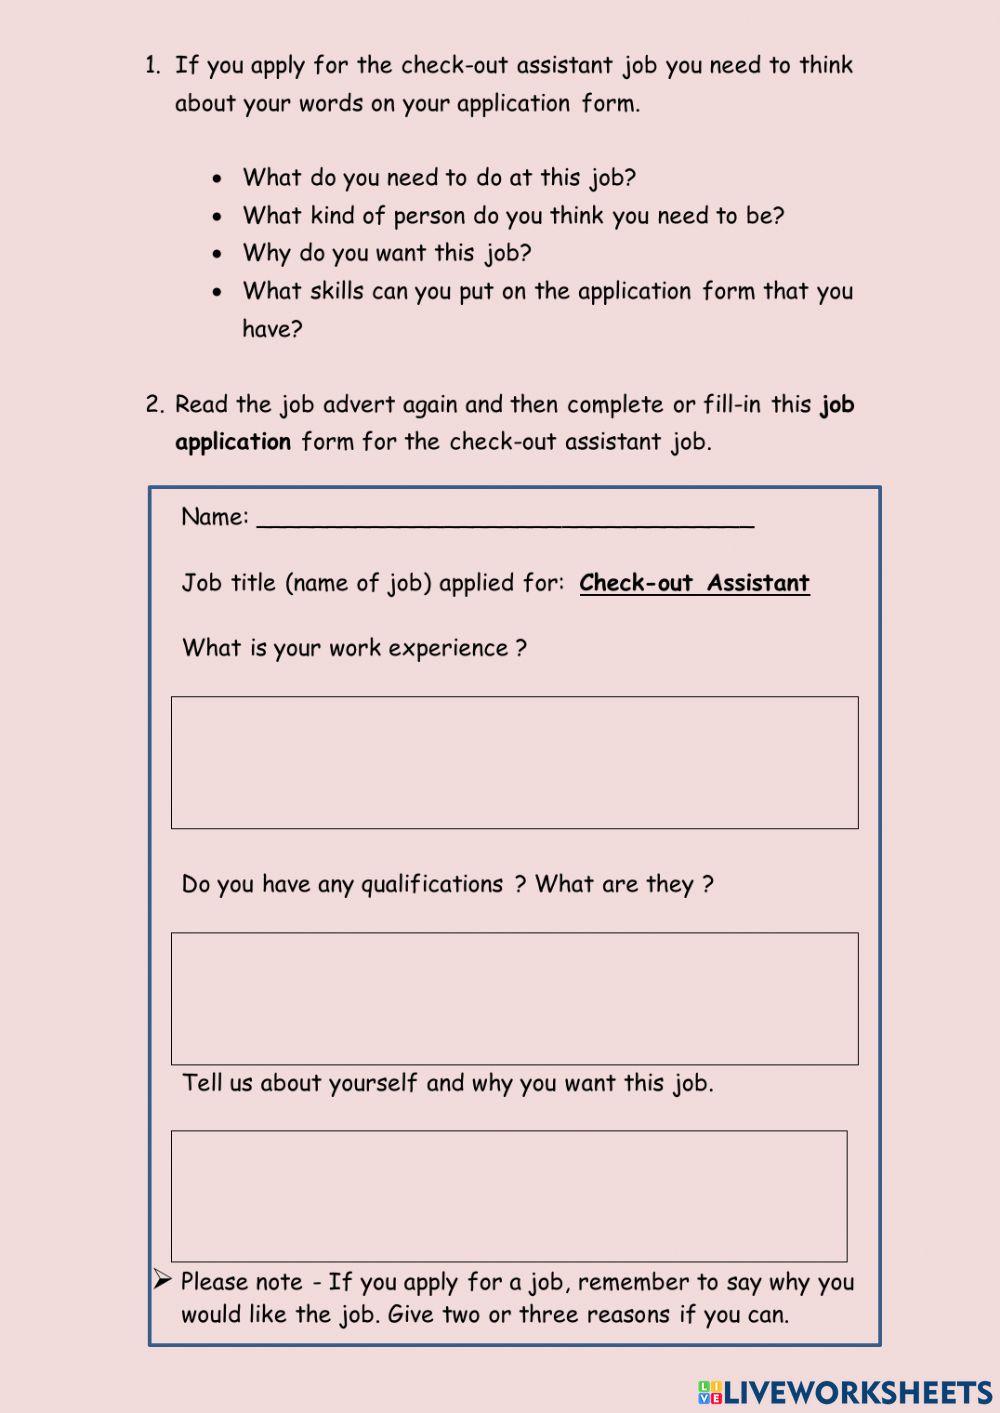 A job application form